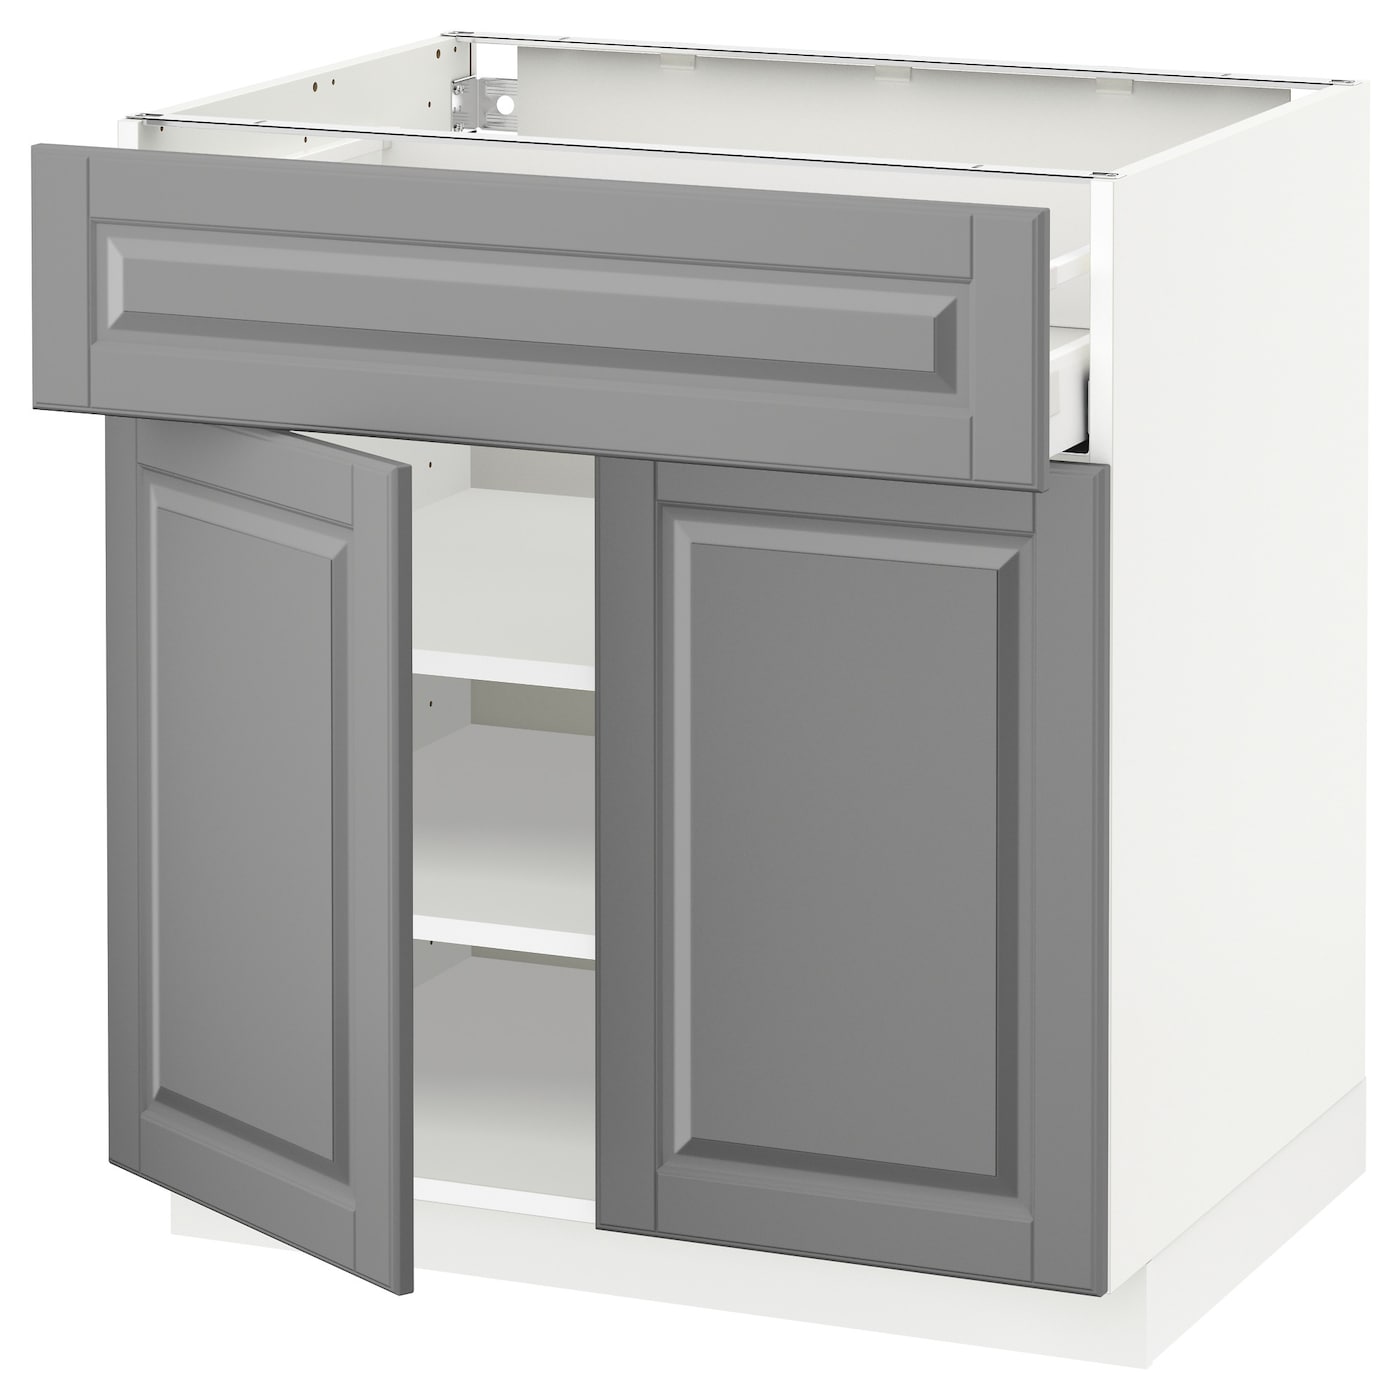 Напольный кухонный шкаф  - IKEA METOD MAXIMERA, 88x61,9x80см, белый/серый, МЕТОД МАКСИМЕРА ИКЕА